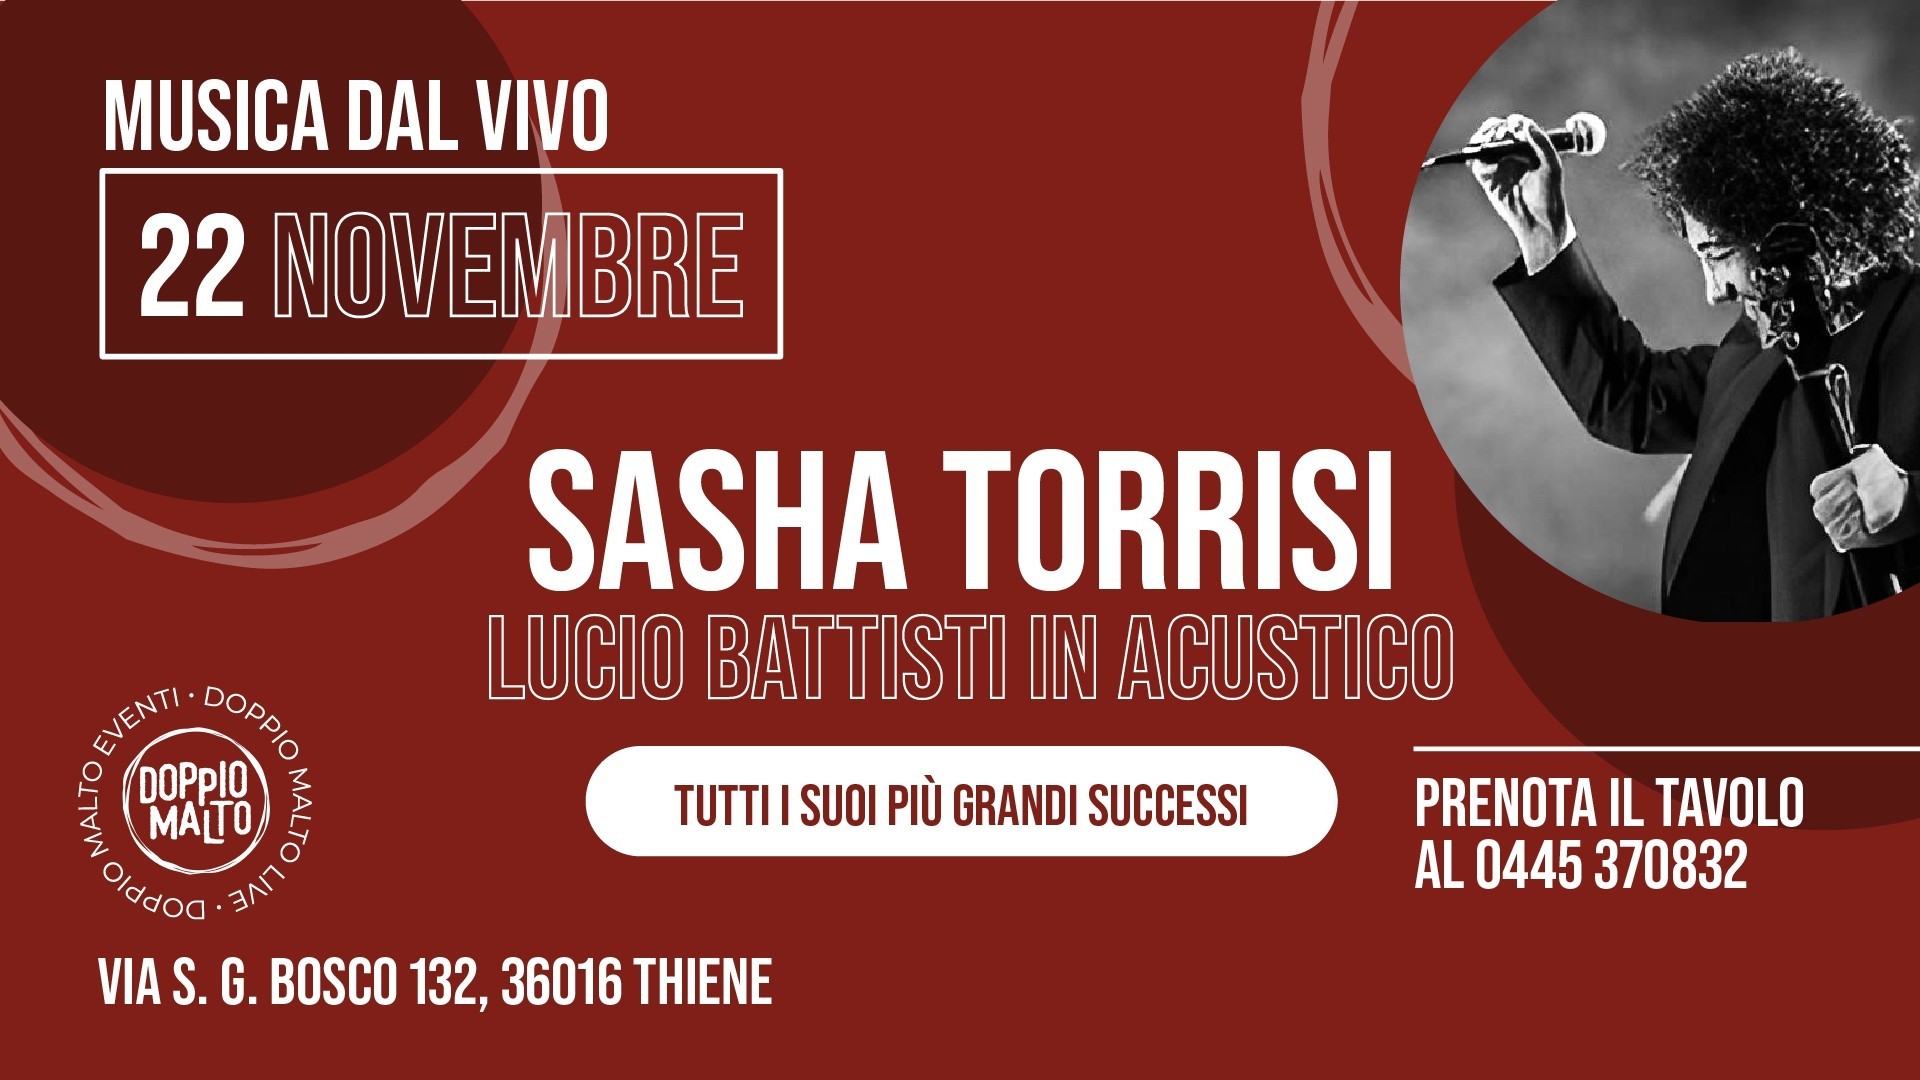 Sasha Torrisi - Lucio Battisti in acustico